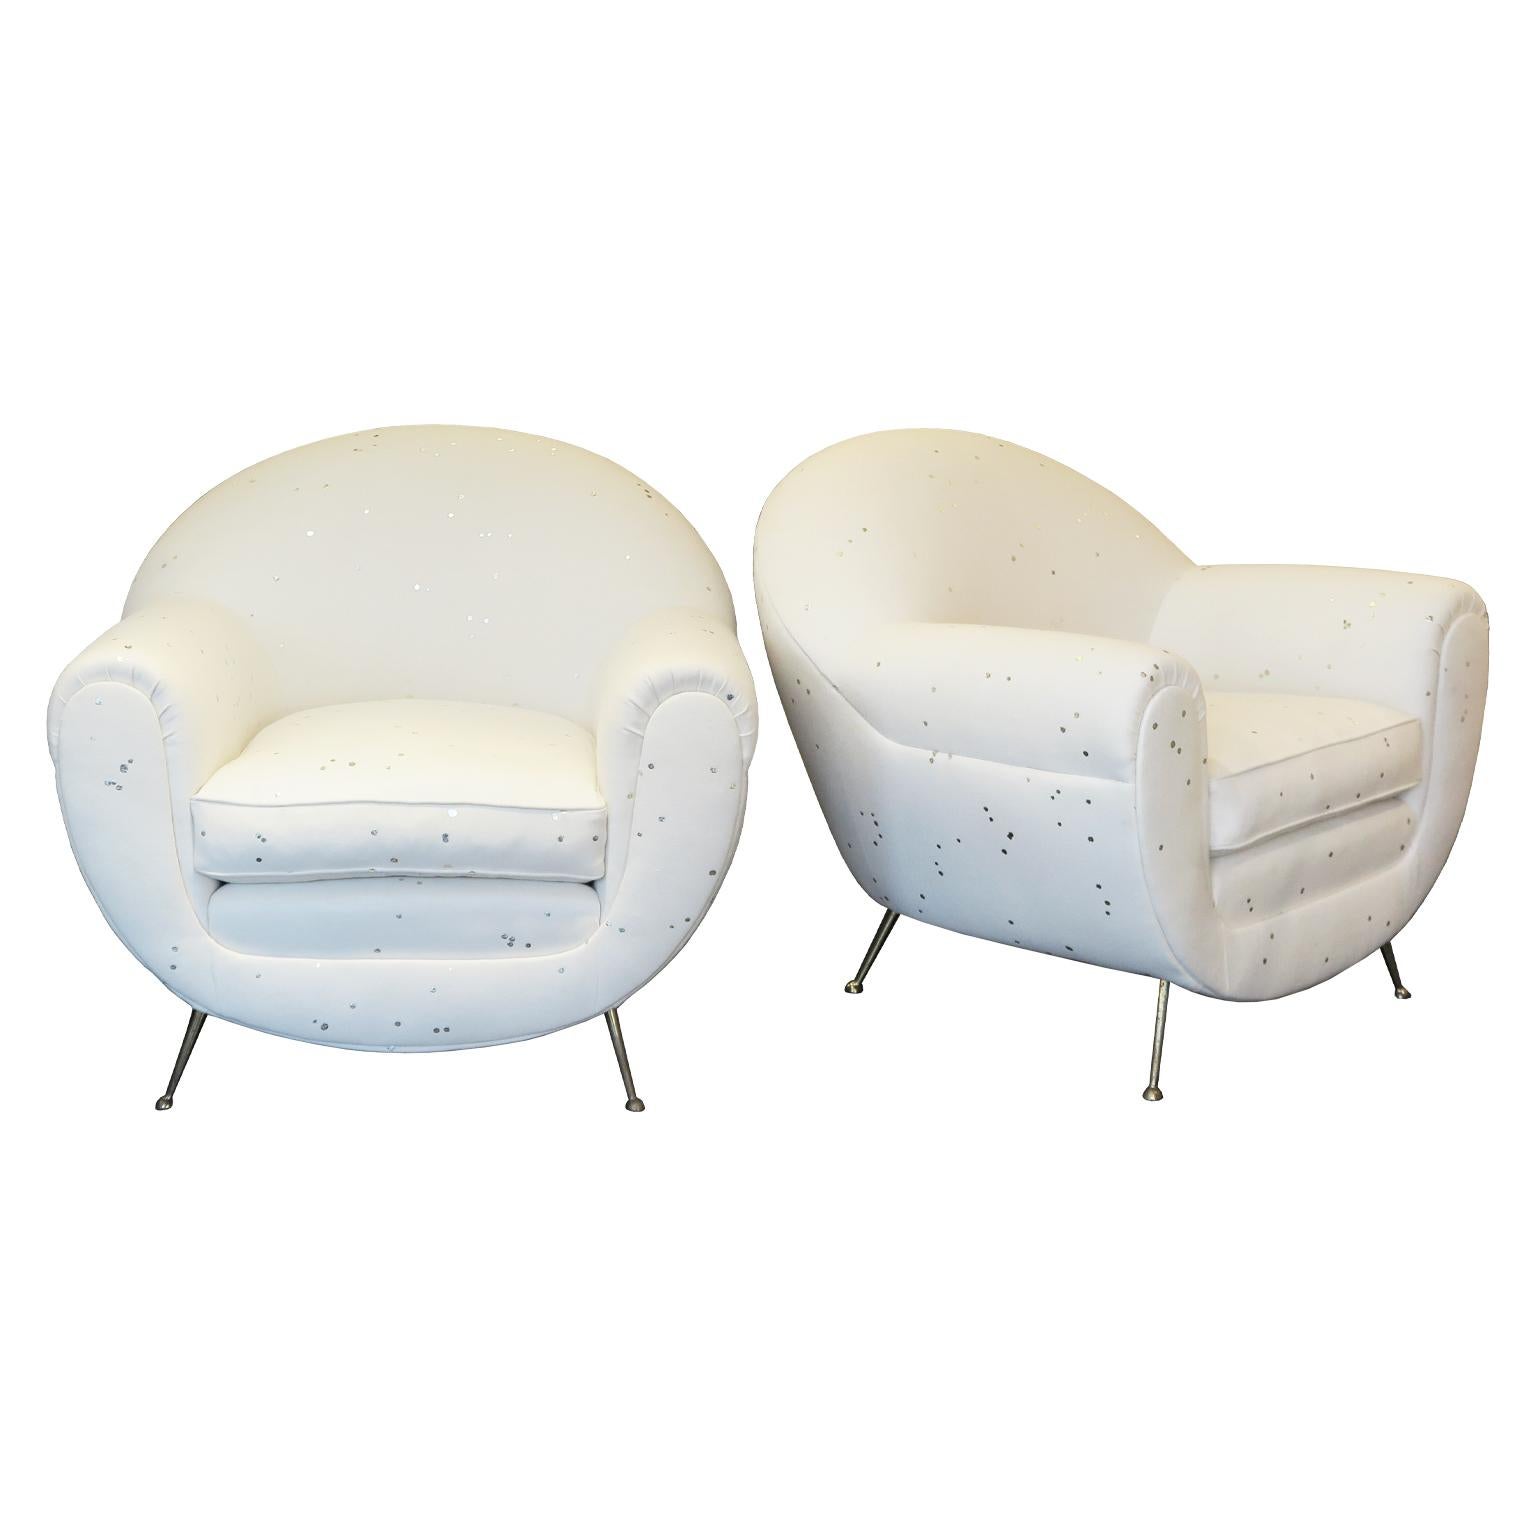 Paire de chaises longues italiennes du milieu du siècle. Ces fauteuils élégants nouvellement rembourrés ont une forme arrondie et sont recouverts d'un tissu de laine dans une douce couleur crème avec des points blanc-or tout autour. La chaise